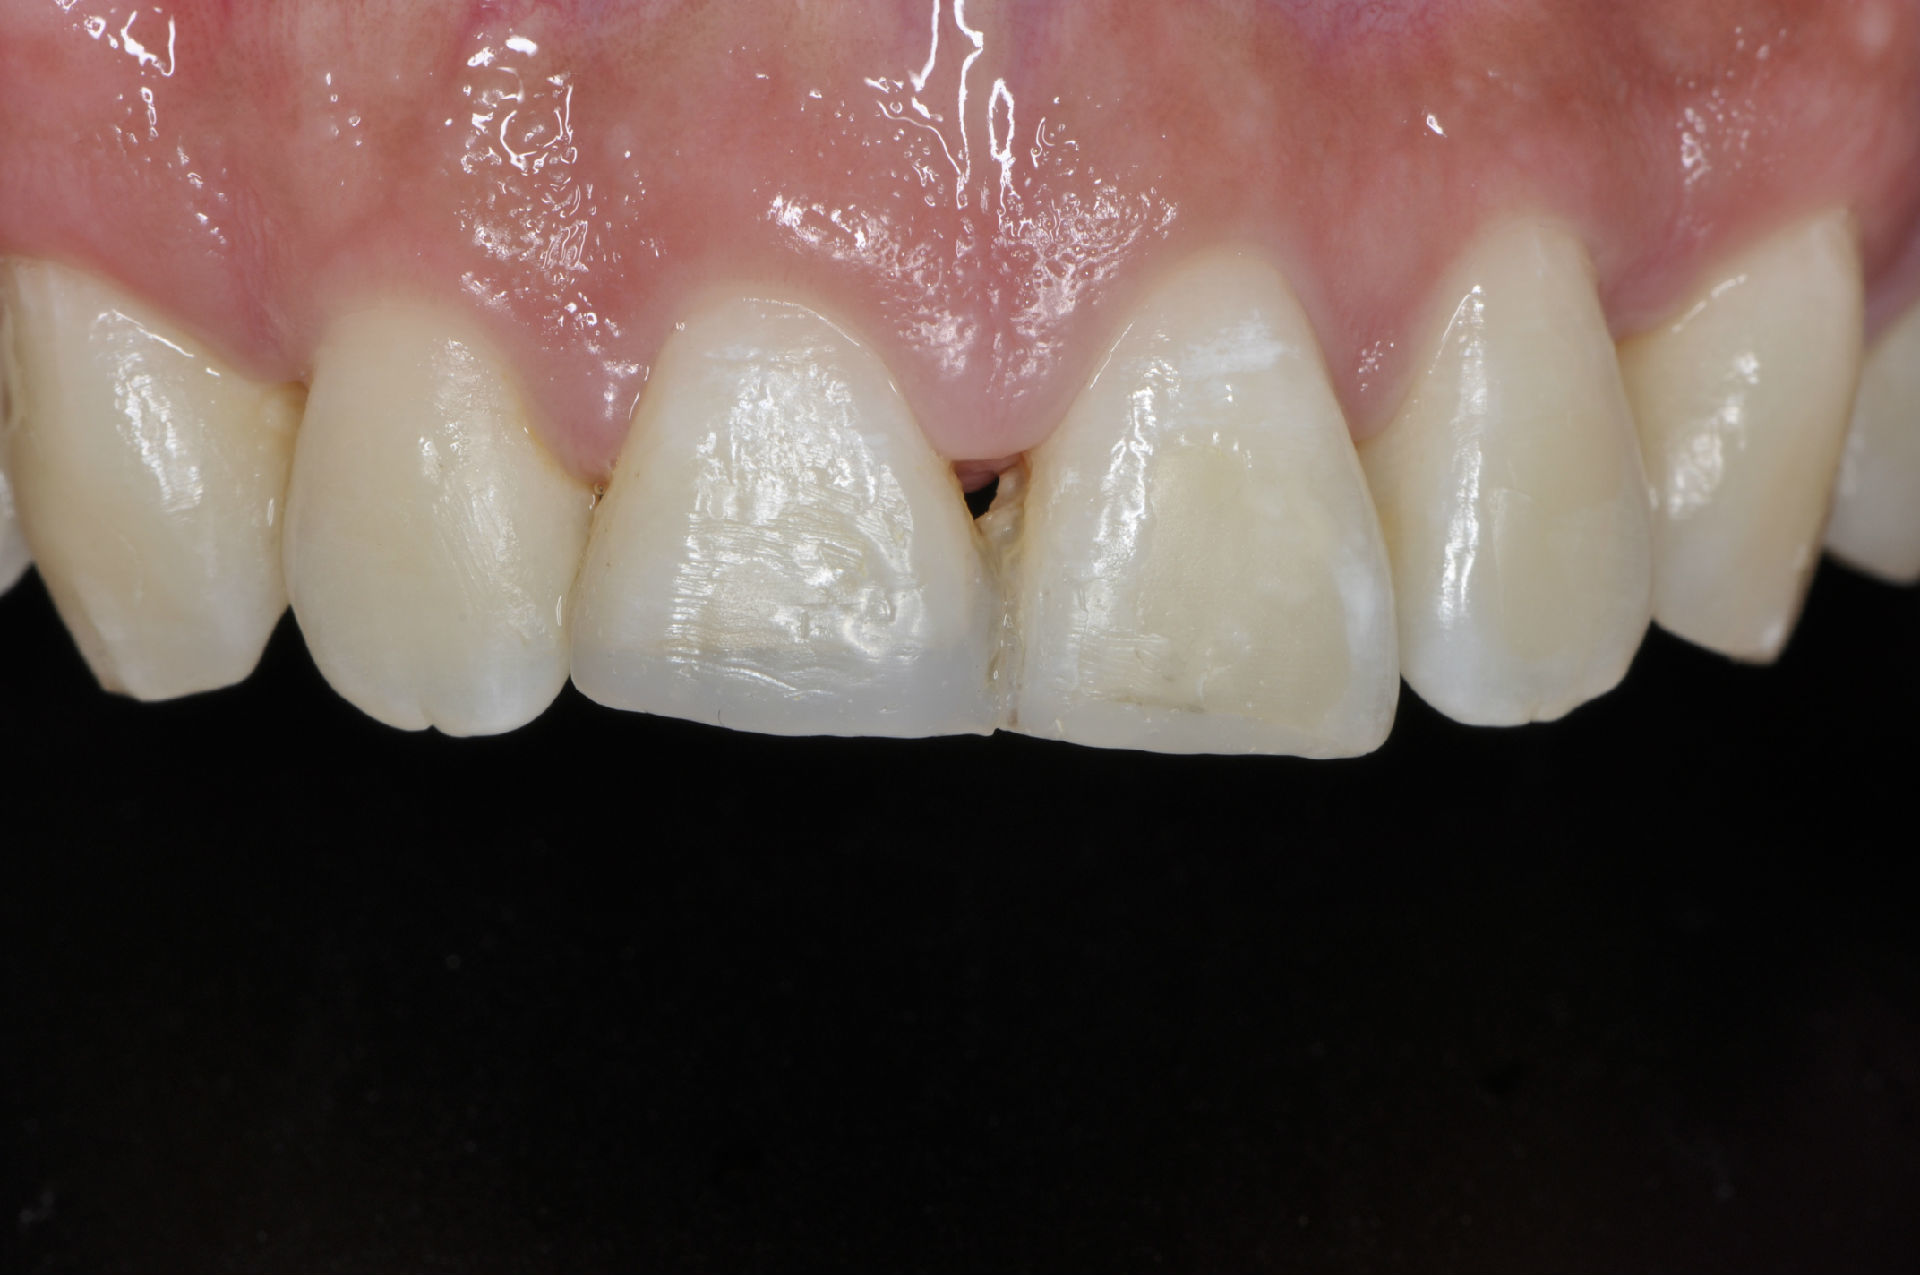 笔者结合其牙齿一般检查情况及x线片检查情况发现该患者右上中切牙